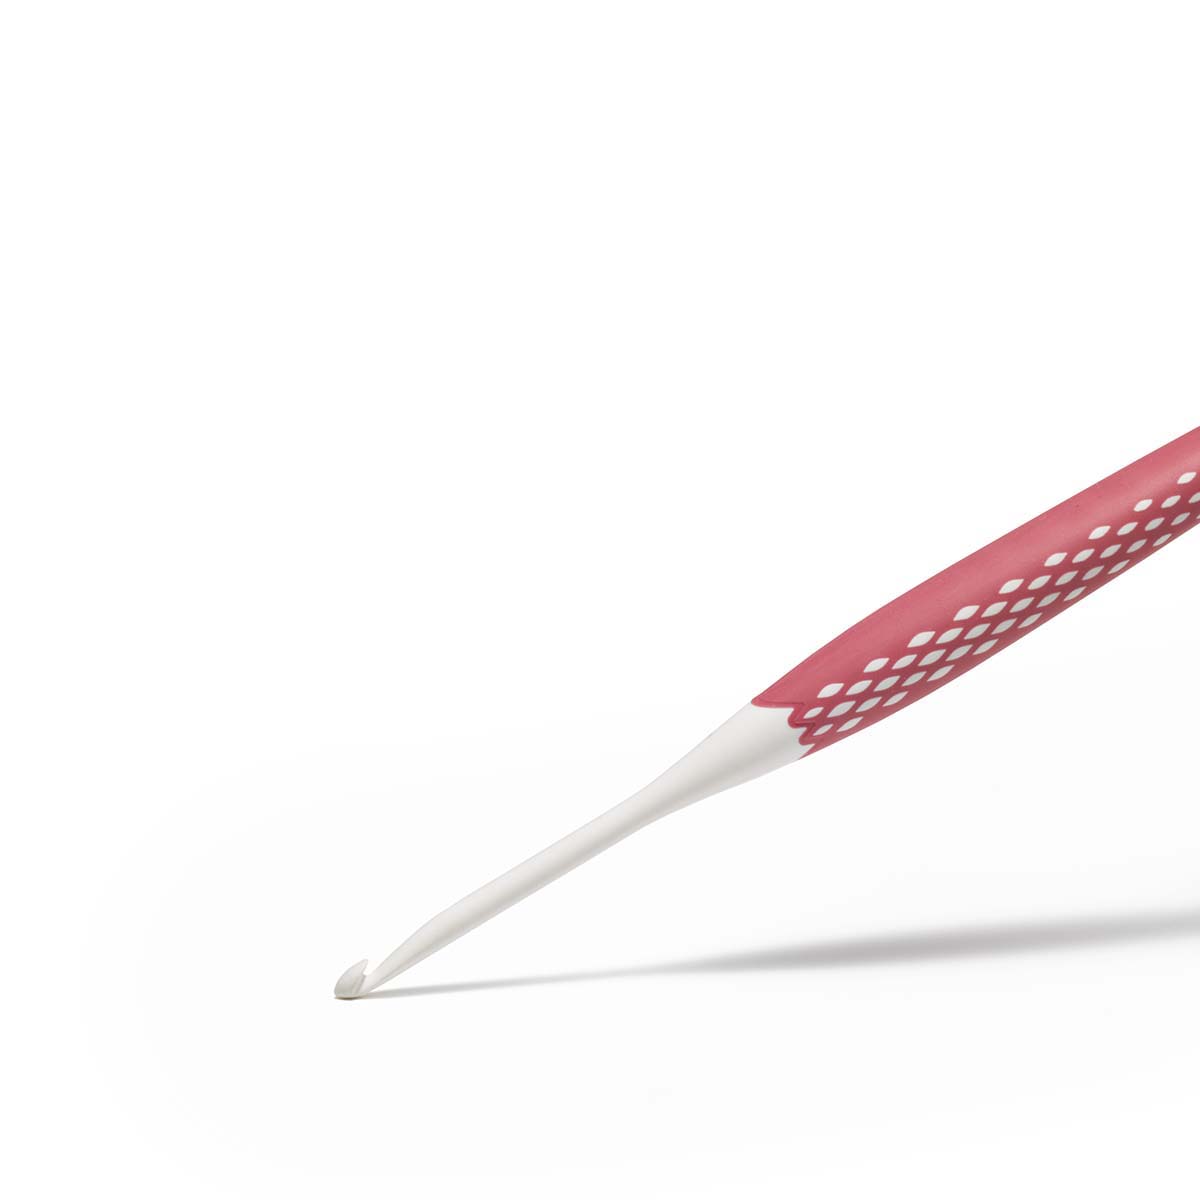 Крючок для вязания Prym эргономичный с прорезиненной ручкой удобный легкий 4 мм 16 см Ergonomics 218485 - фото 7